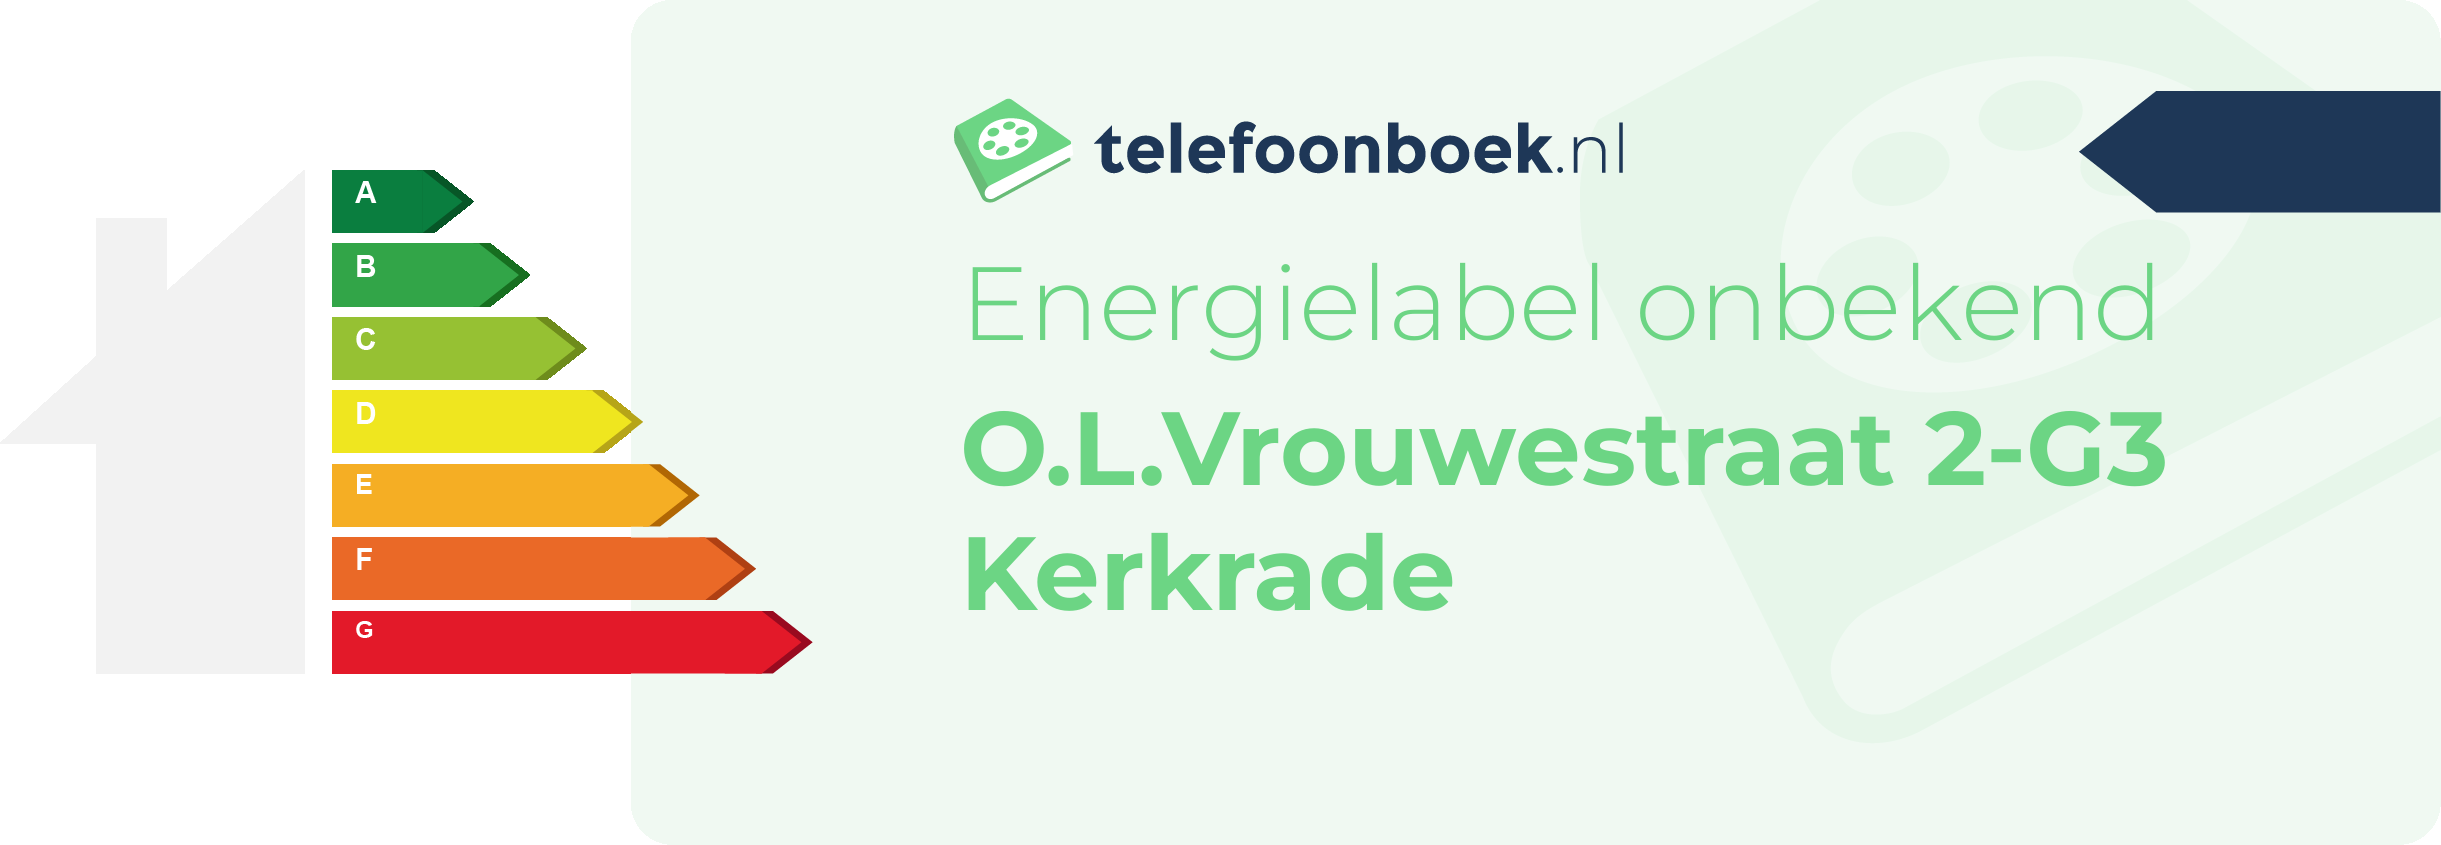 Energielabel O.L.Vrouwestraat 2-G3 Kerkrade